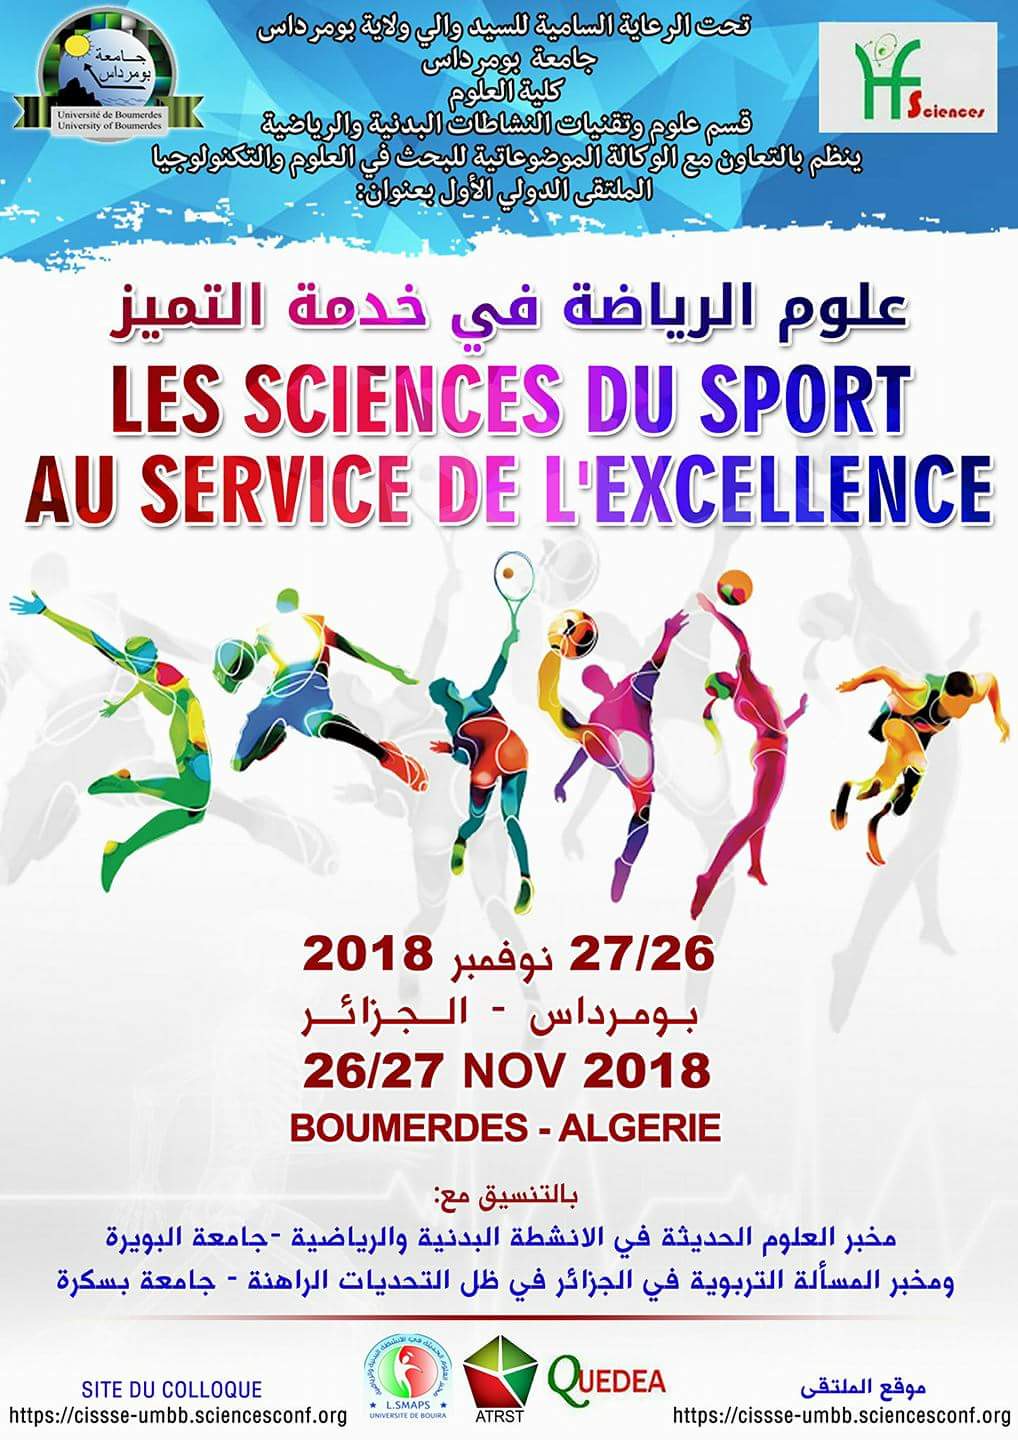 1er Colloque International des Sciences du Sport au Service de l’Excellence, Les 26 & 27 Novembre 2018 à Boumerdès